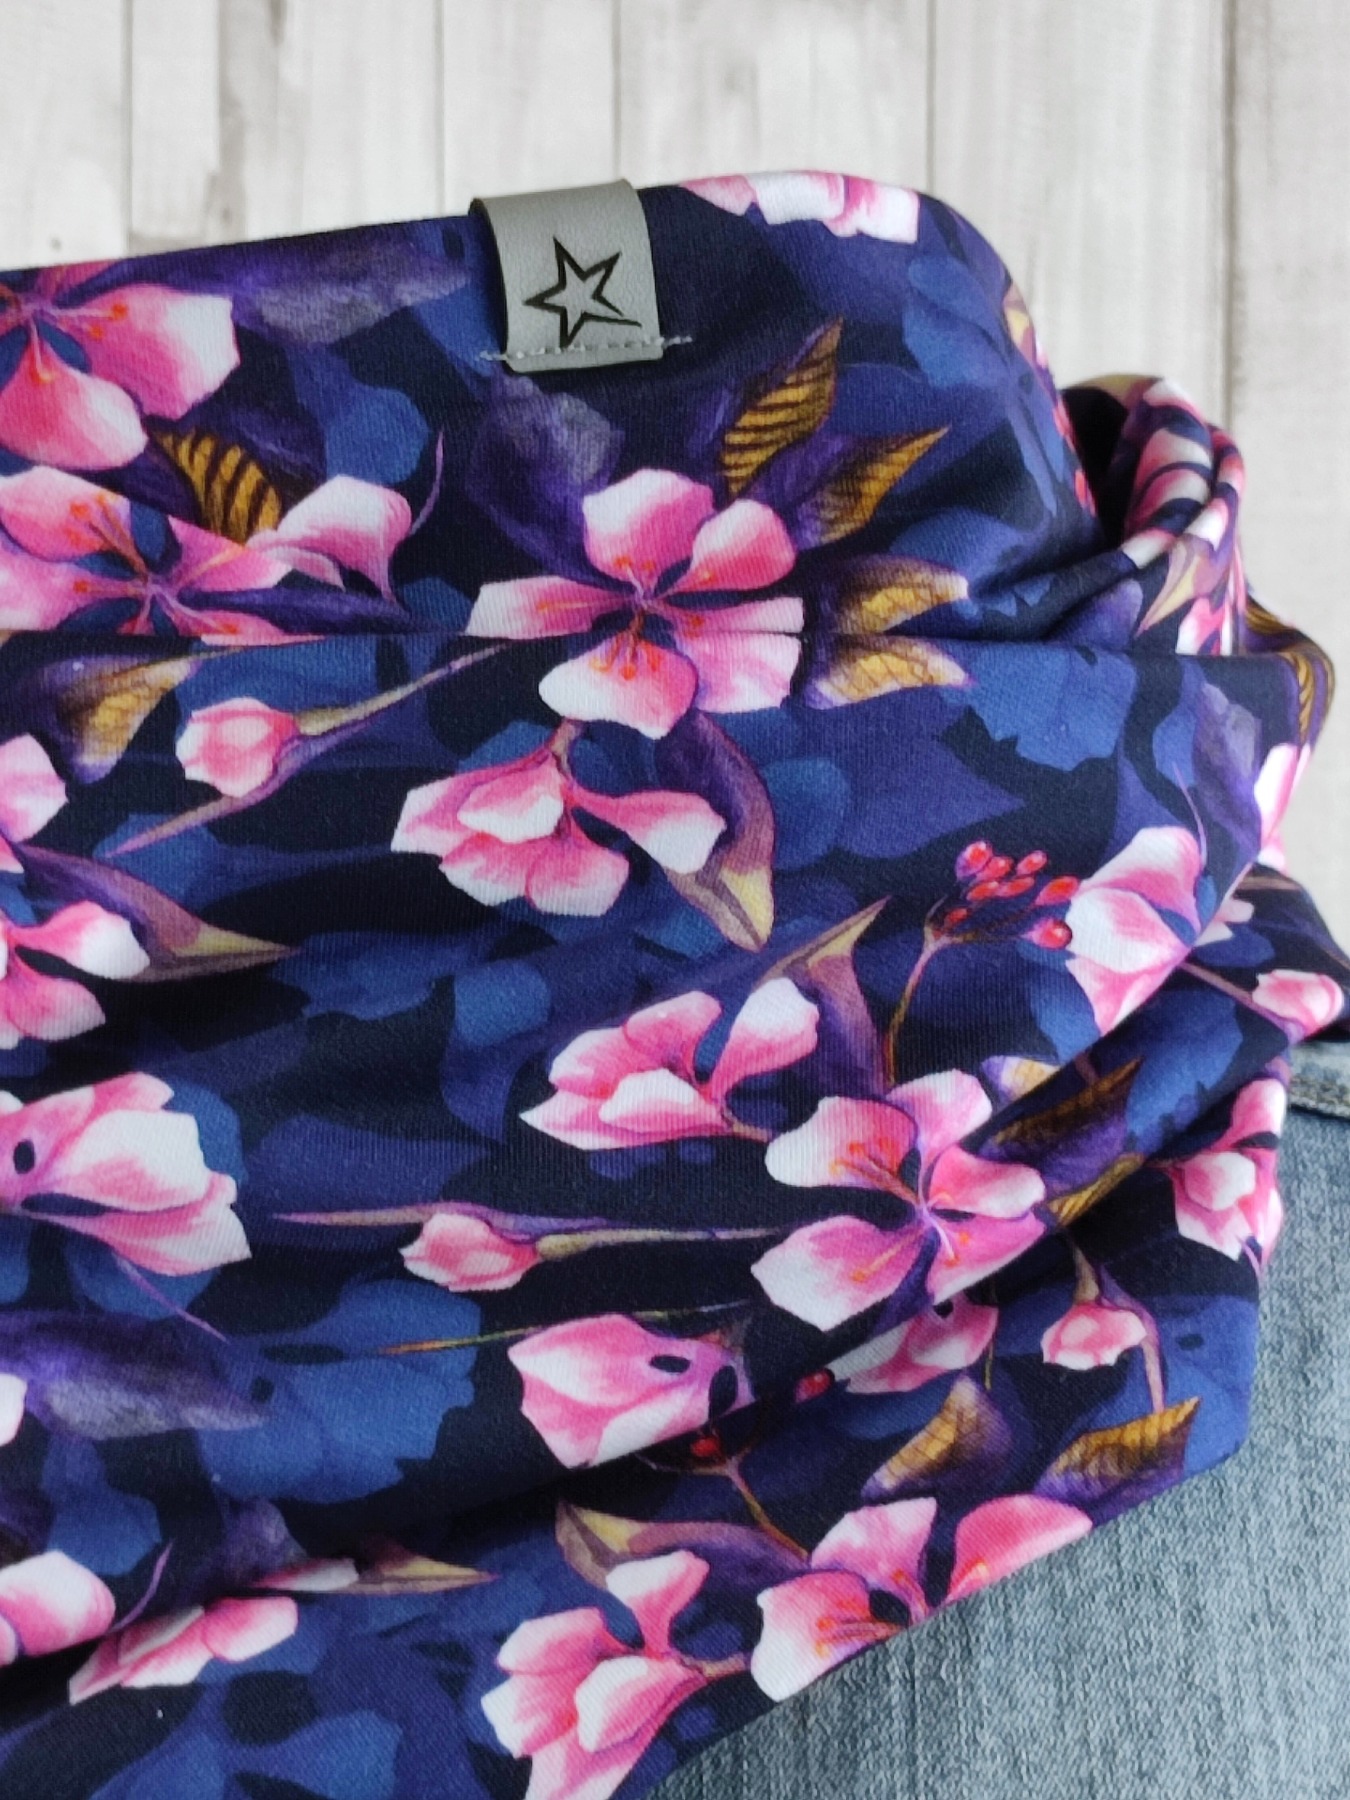 Loop Schlauchschal dunkelblau mit Hortensien in pink - Schal für Damen 3